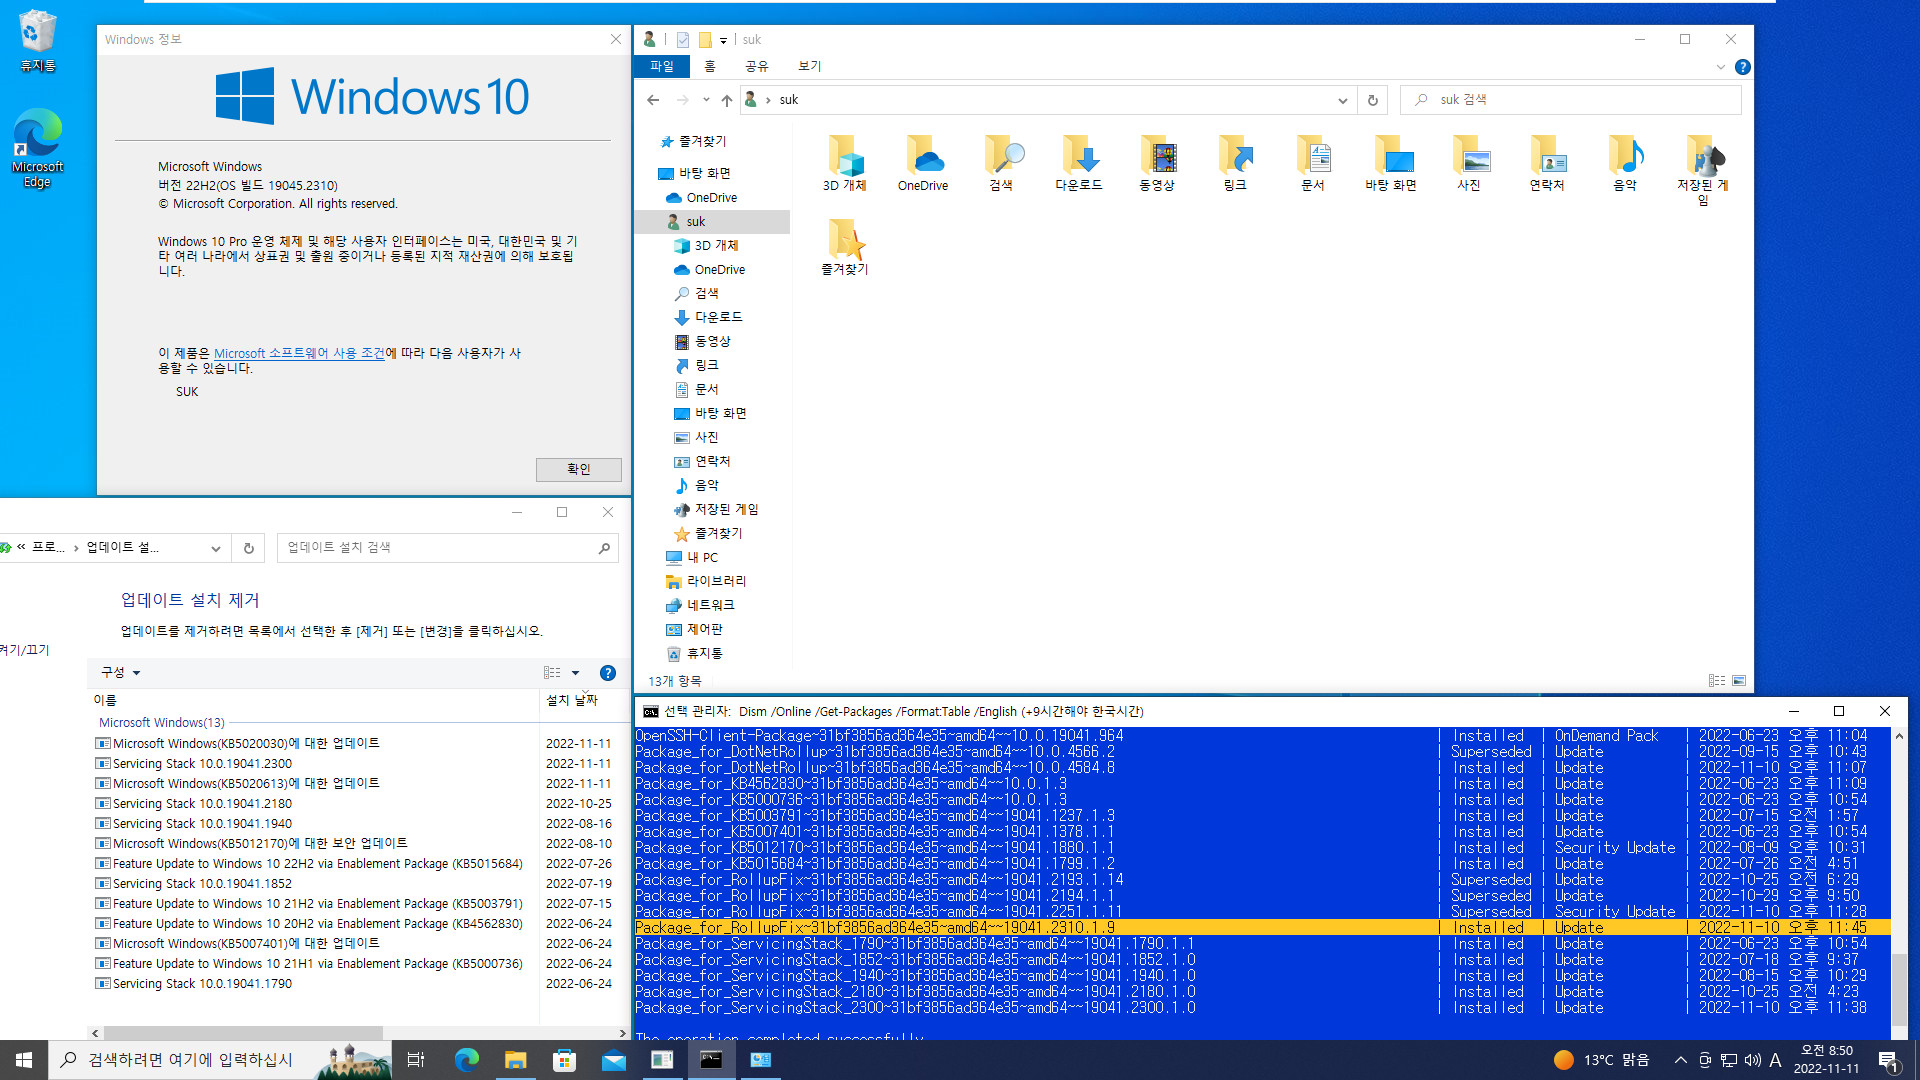 2022-11-11 금요일 - 릴리스 프리뷰 - Windows 10 버전 22H2, 빌드 19045.2310 - 누적 업데이트 KB5020030 - vmware에 설치 테스트 2022-11-11_085025.jpg